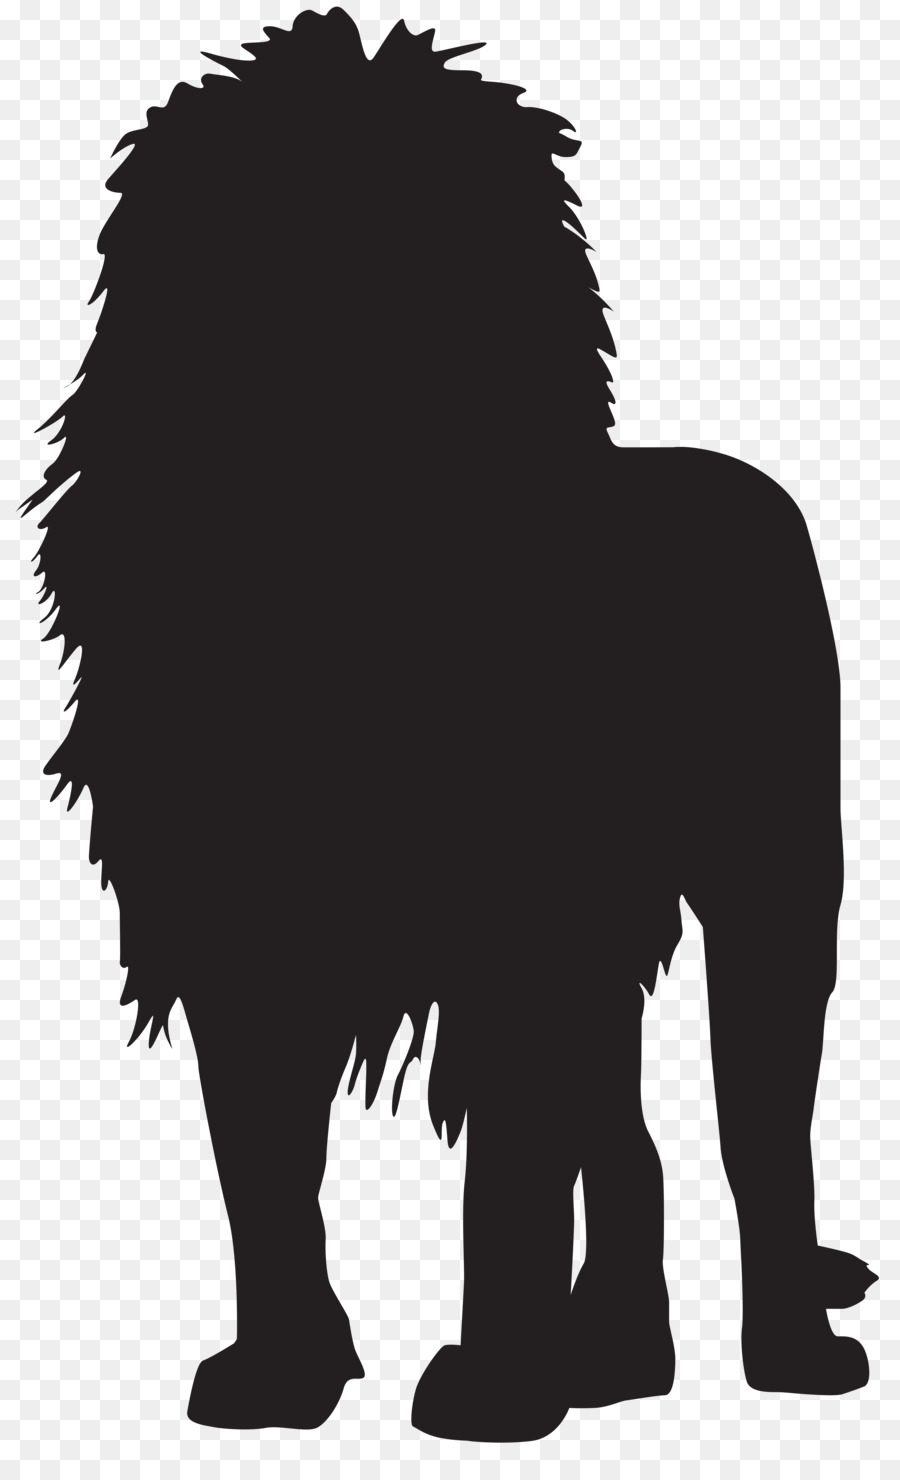 White lion Silhouette Clip art - Transparent Lion Cliparts png download - 4930*8000 - Free Transparent Lion png Download.